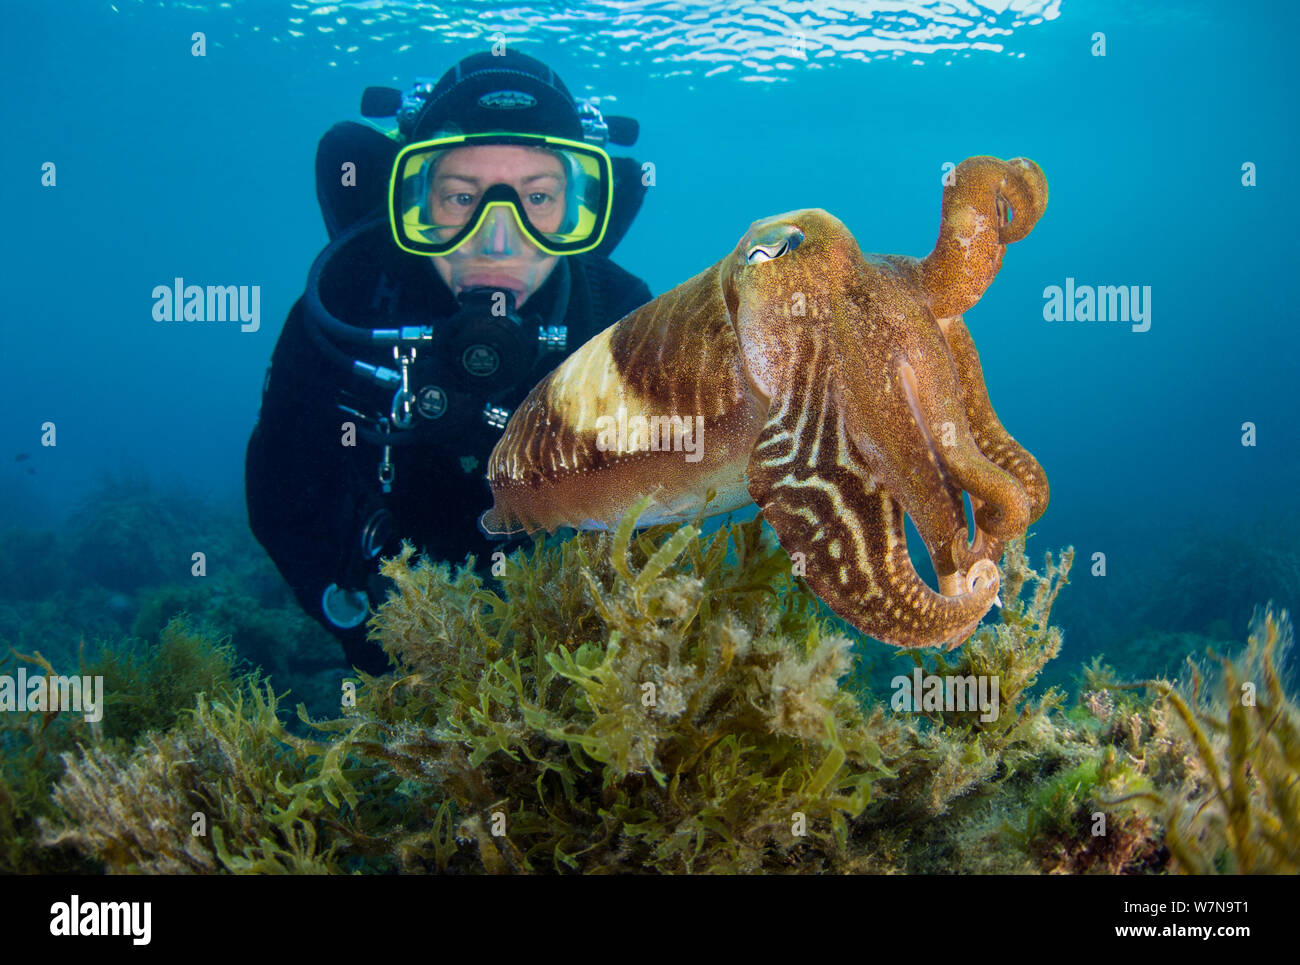 Un subacqueo incontra una seppia (Sepia officinalis) al di sopra di alghe, Baia di Xlendi, isola di Gozo, Malta, Mare Mediterraneo. Giugno 2012, Modello rilasciato Foto Stock